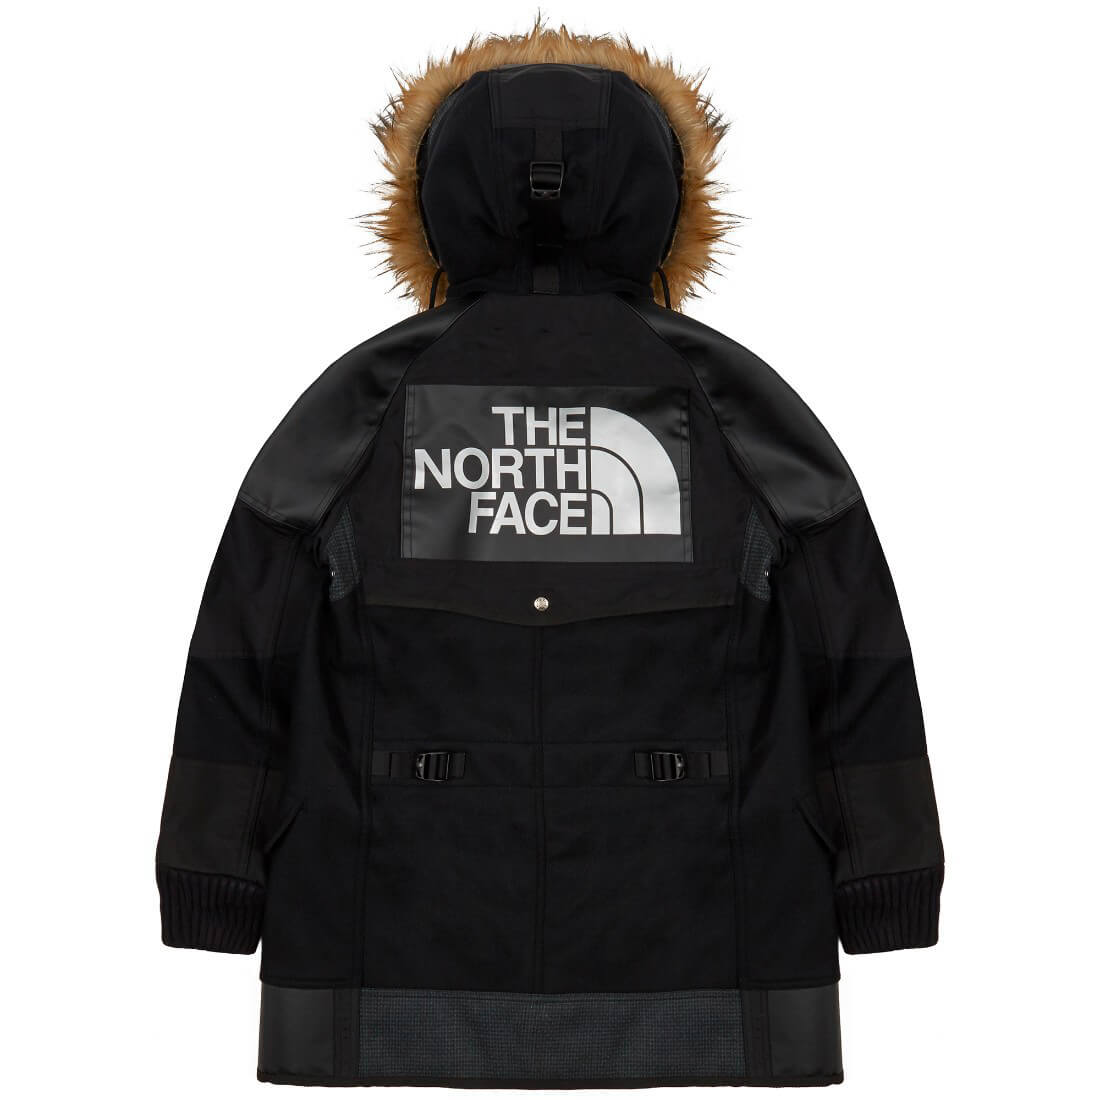 The North Face® x Comme des Garçons - Ape to Gentleman